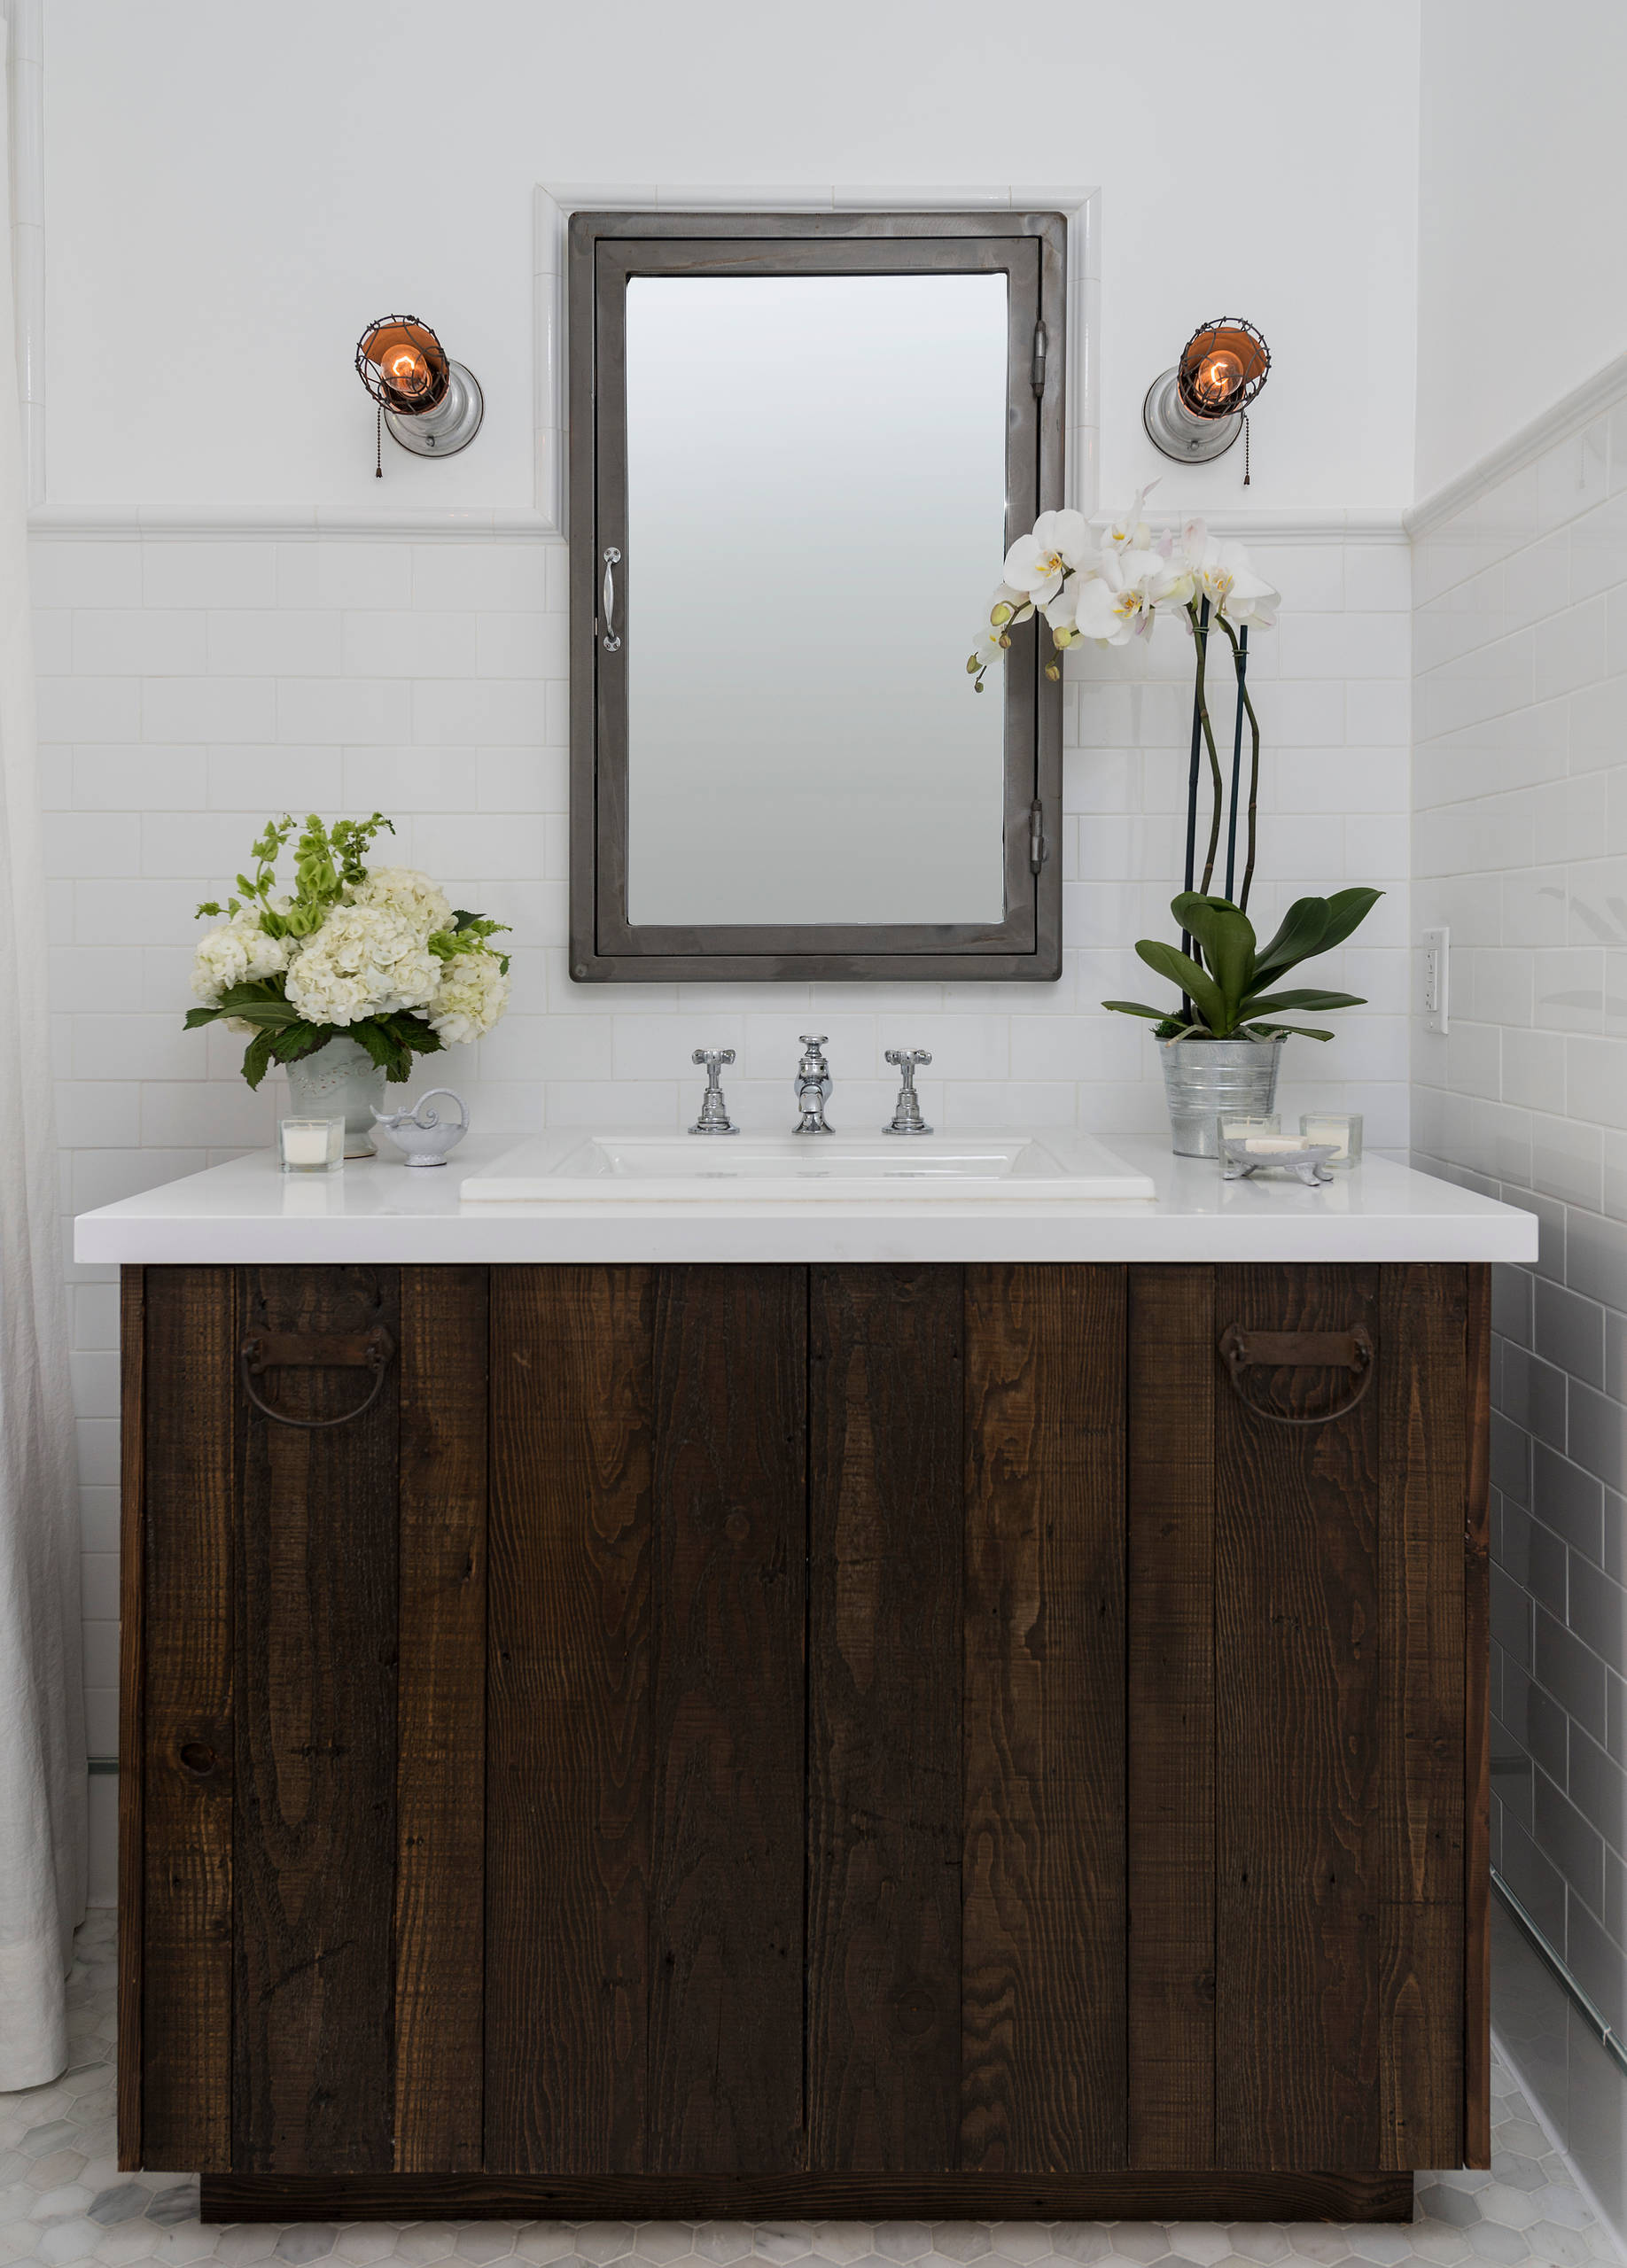 25 Farmhouse Bathroom Decor Ideas (With Inspiring Photos)